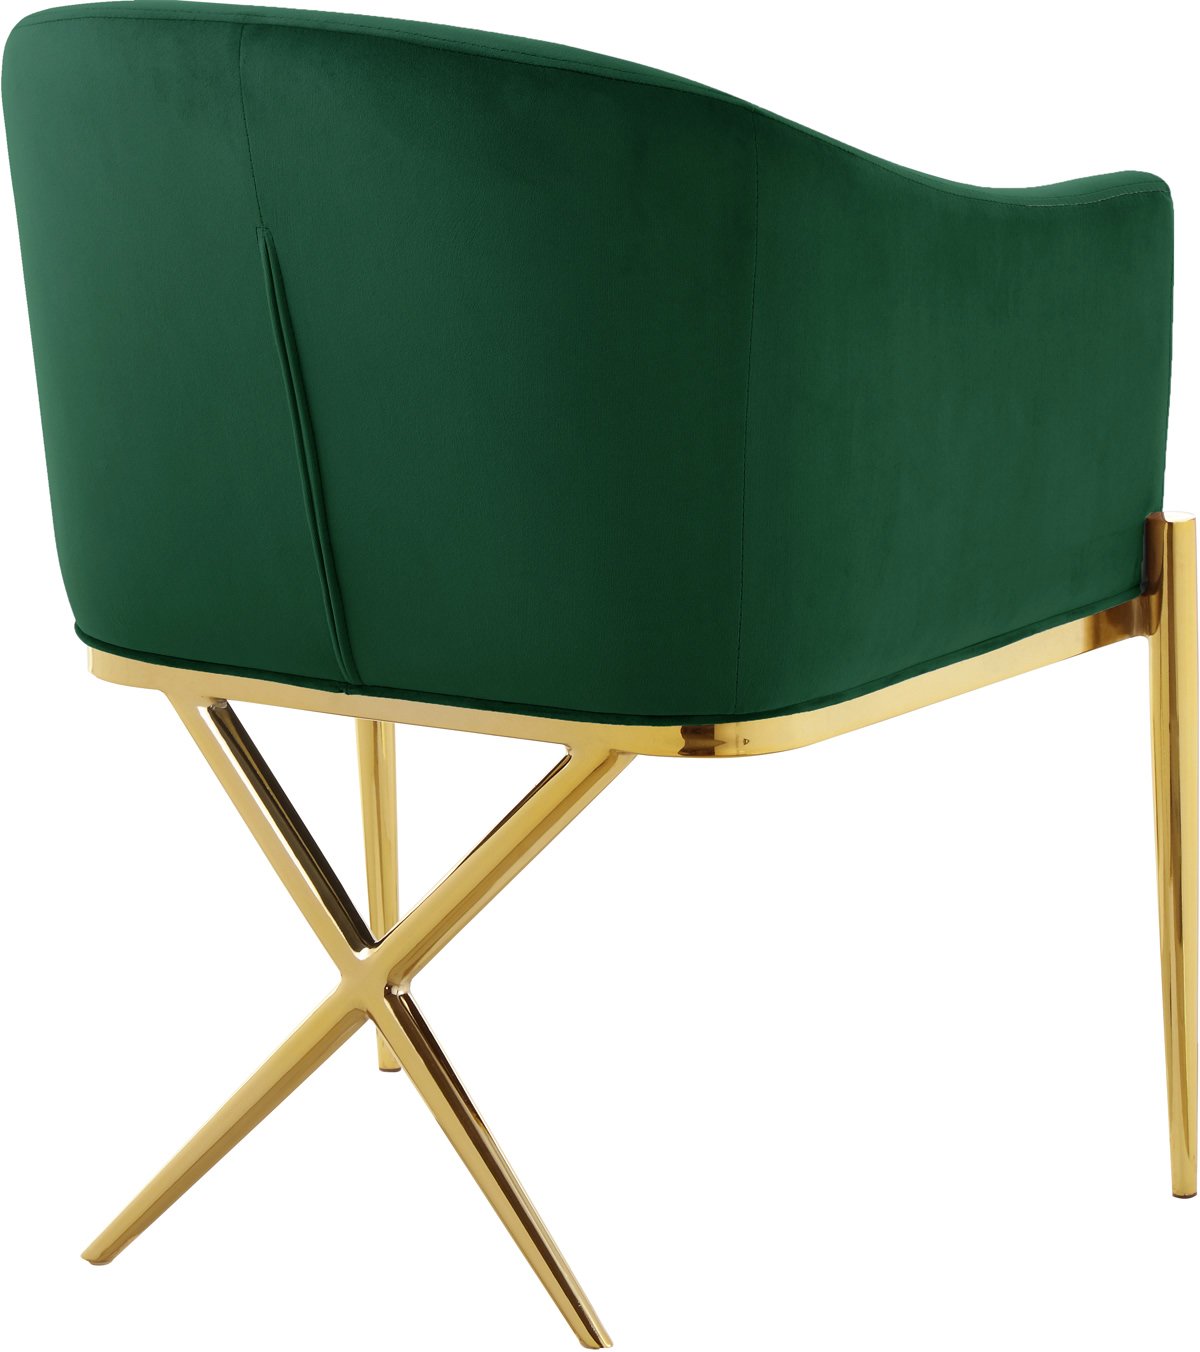 Meridian Furniture Xavier Green Velvet Dining Chair